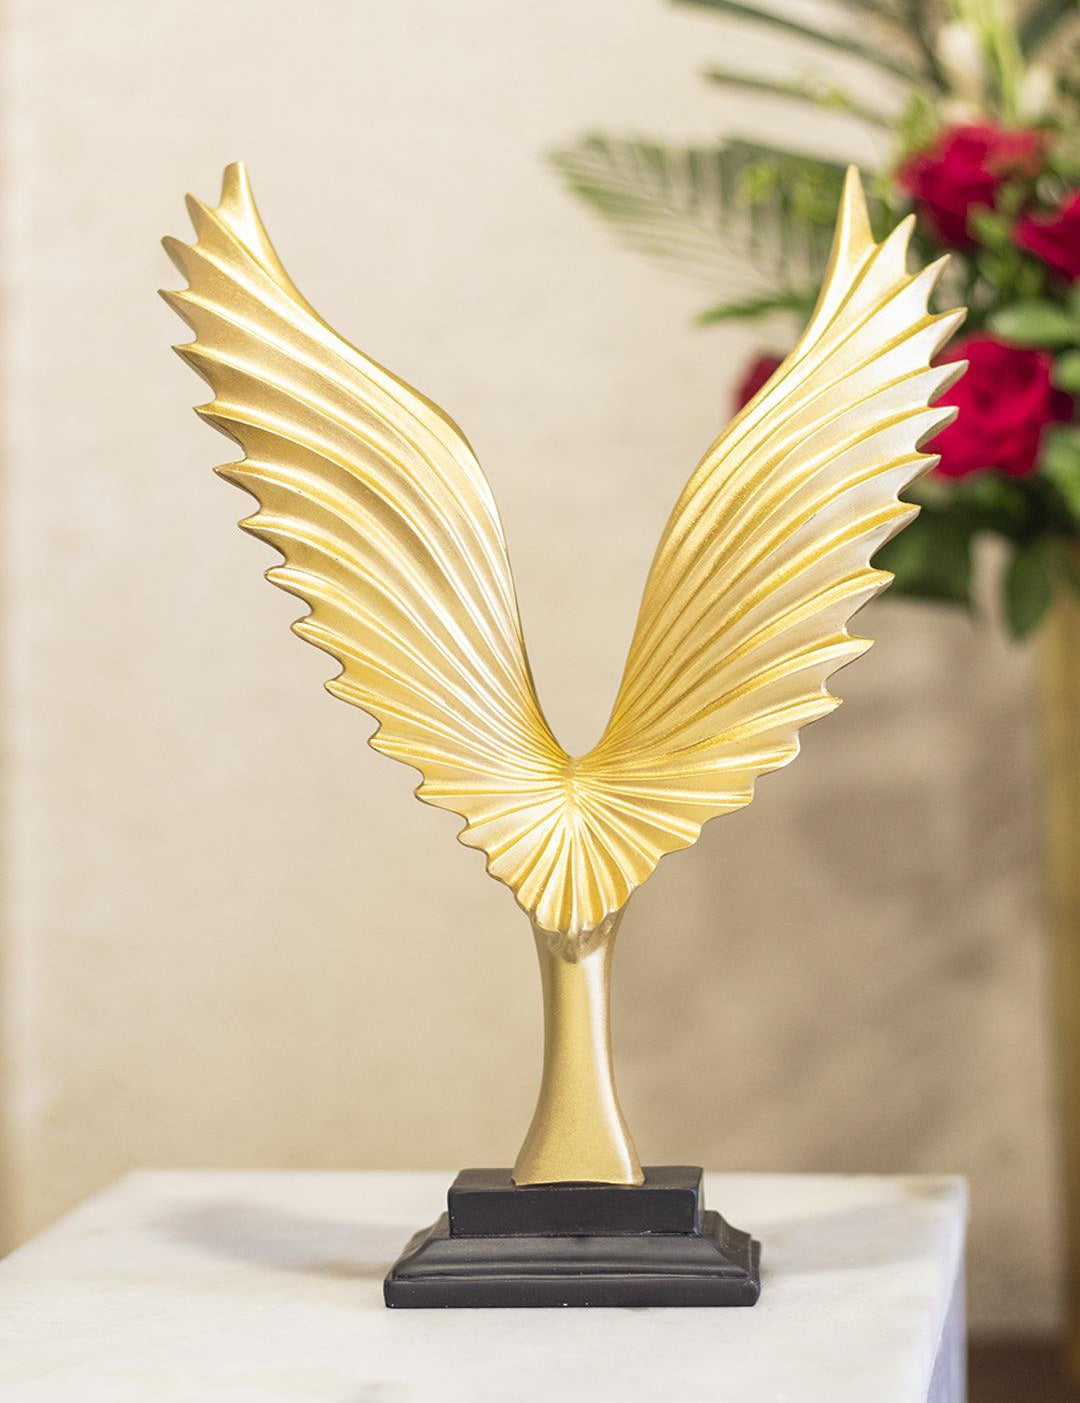 Decorative Golden Wings Statue Home & Office Décor 22CM - 1